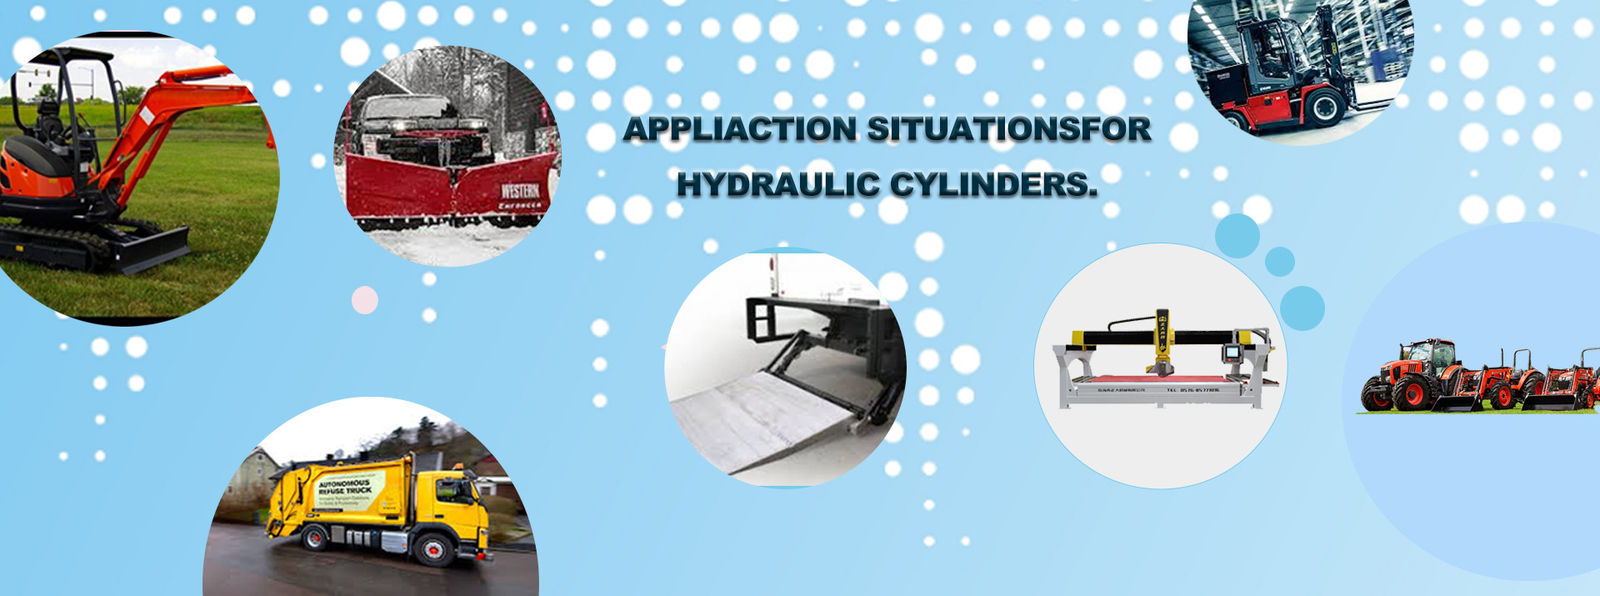 qualité Cylindres hydrauliques adaptés aux besoins du client Un service